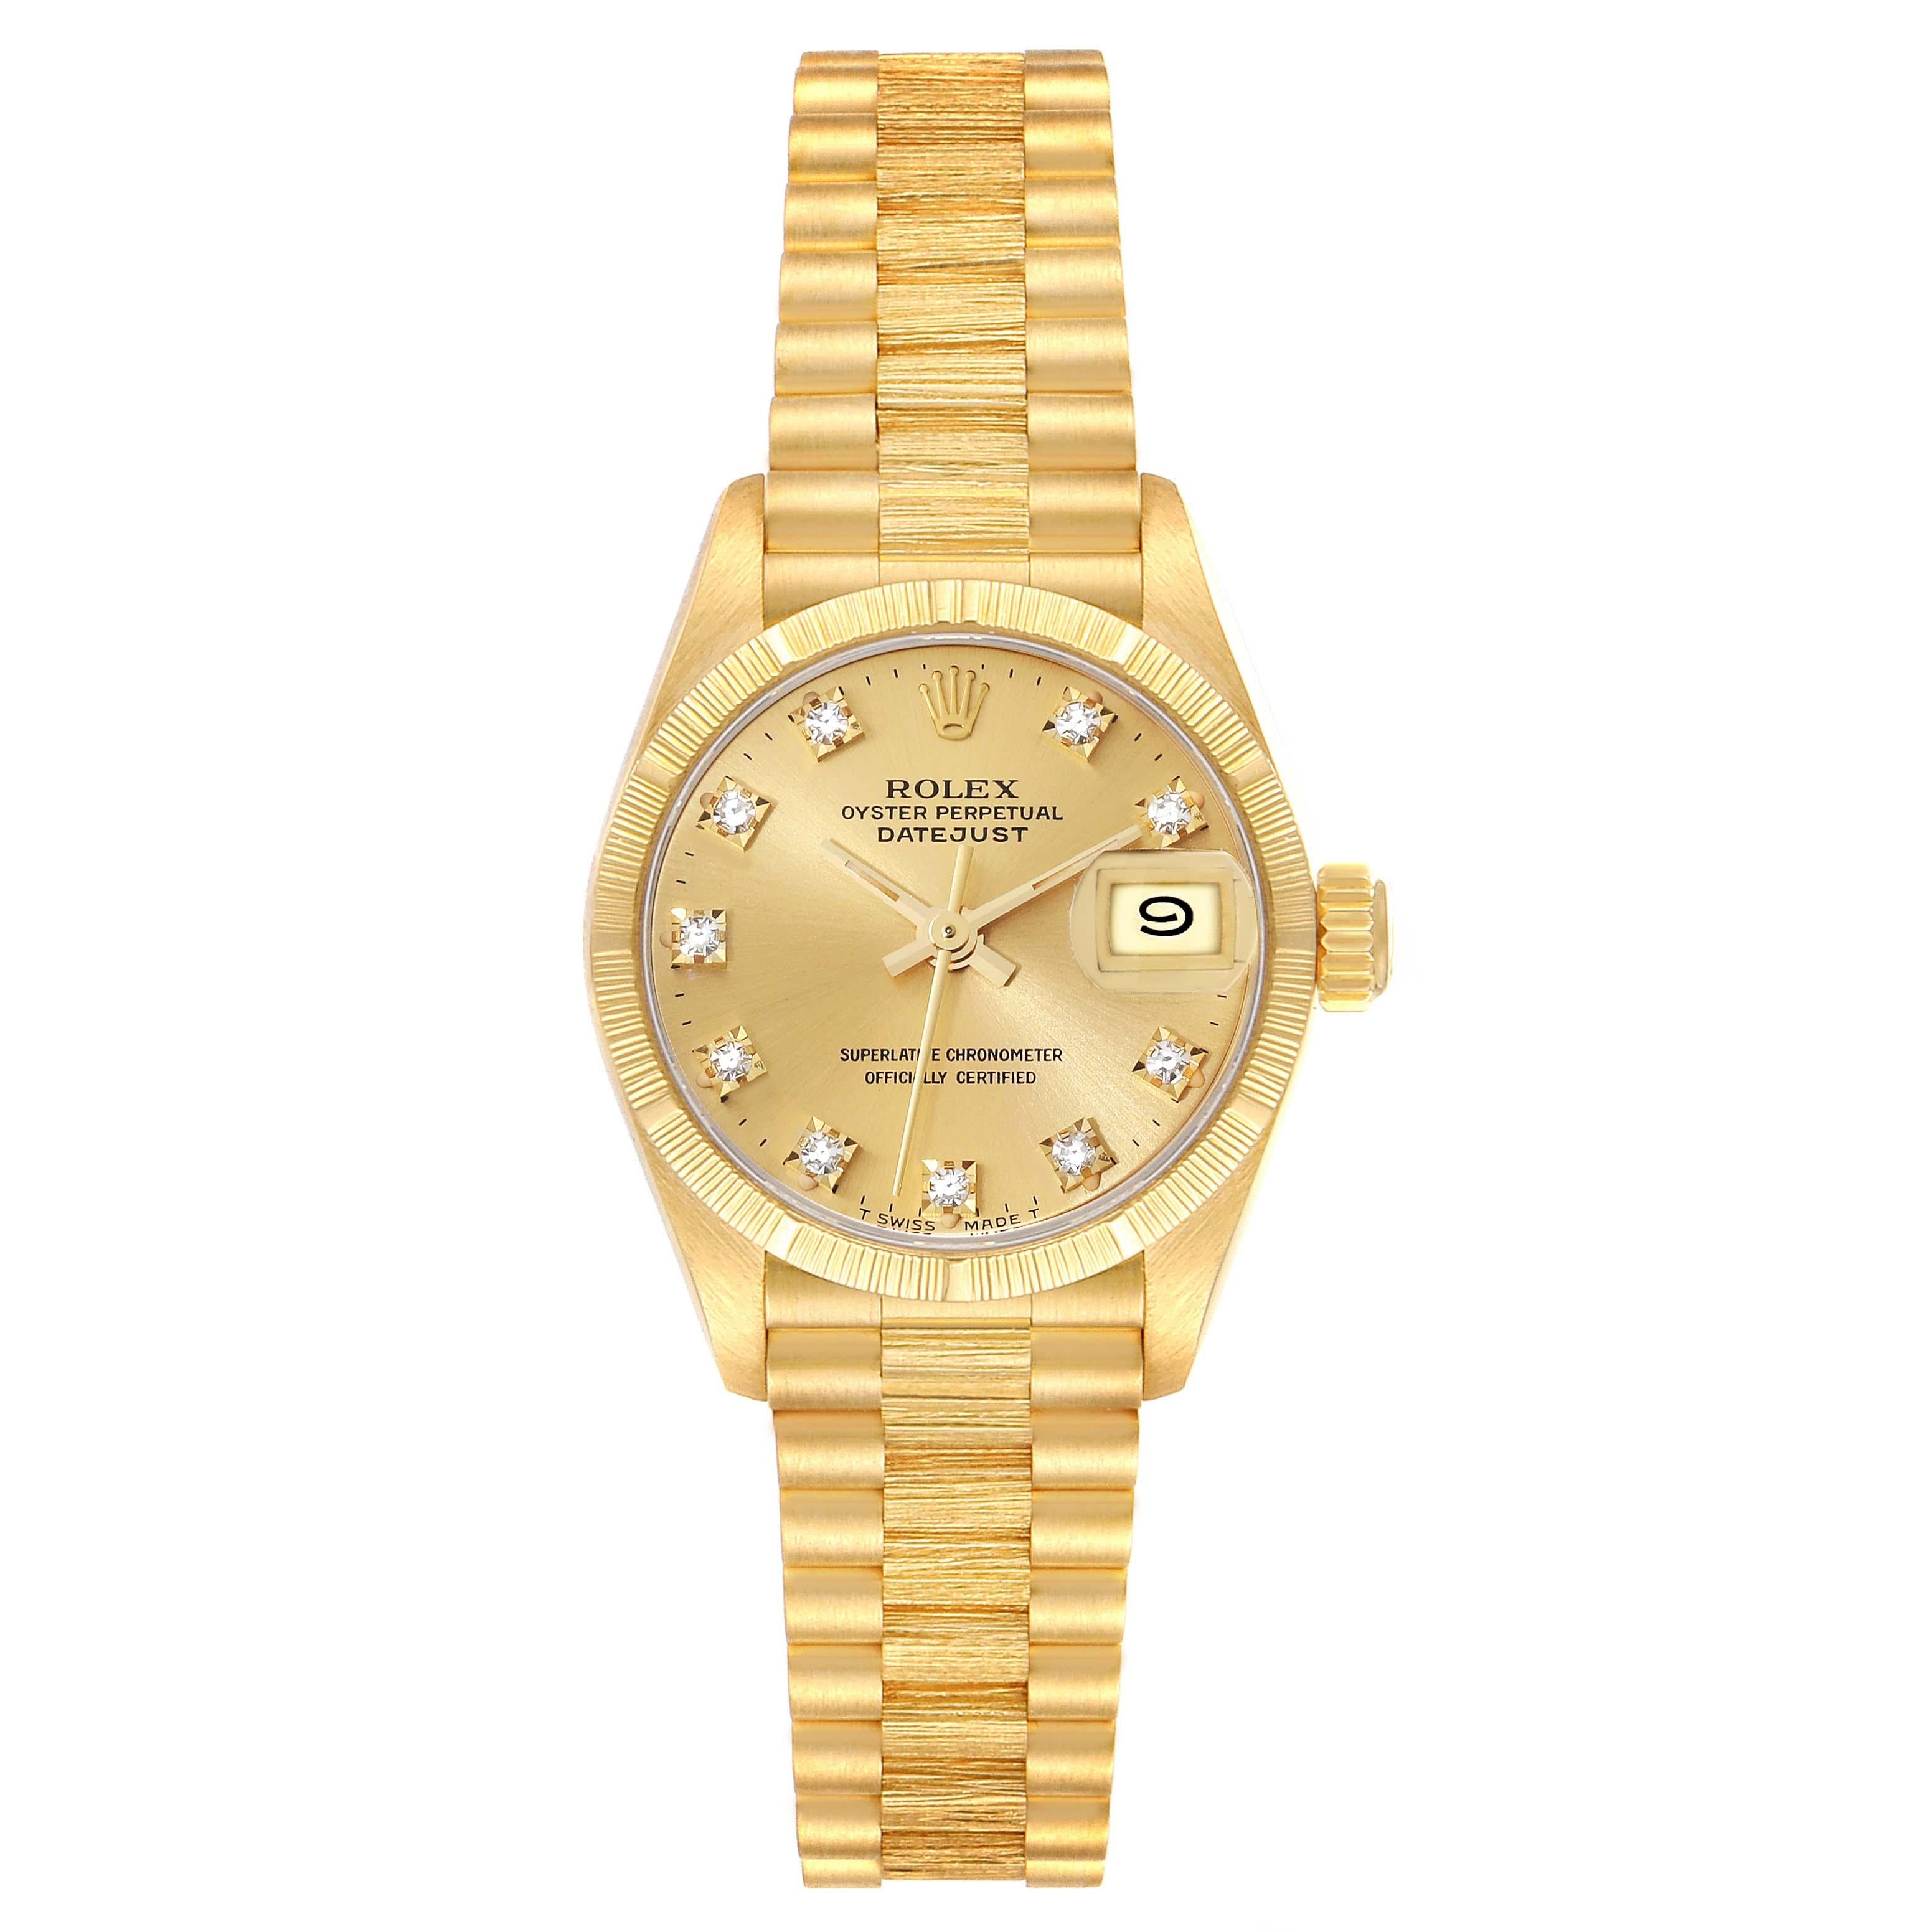 Rolex Datejust President Diamond Dial Yellow Gold Bark Finish Ladies Watch 69278. Mouvement à remontage automatique certifié chronomètre. Boîtier en or jaune 18 carats d'un diamètre de 26,0 mm. Logo Rolex sur la couronne. Lunette en or jaune 18k